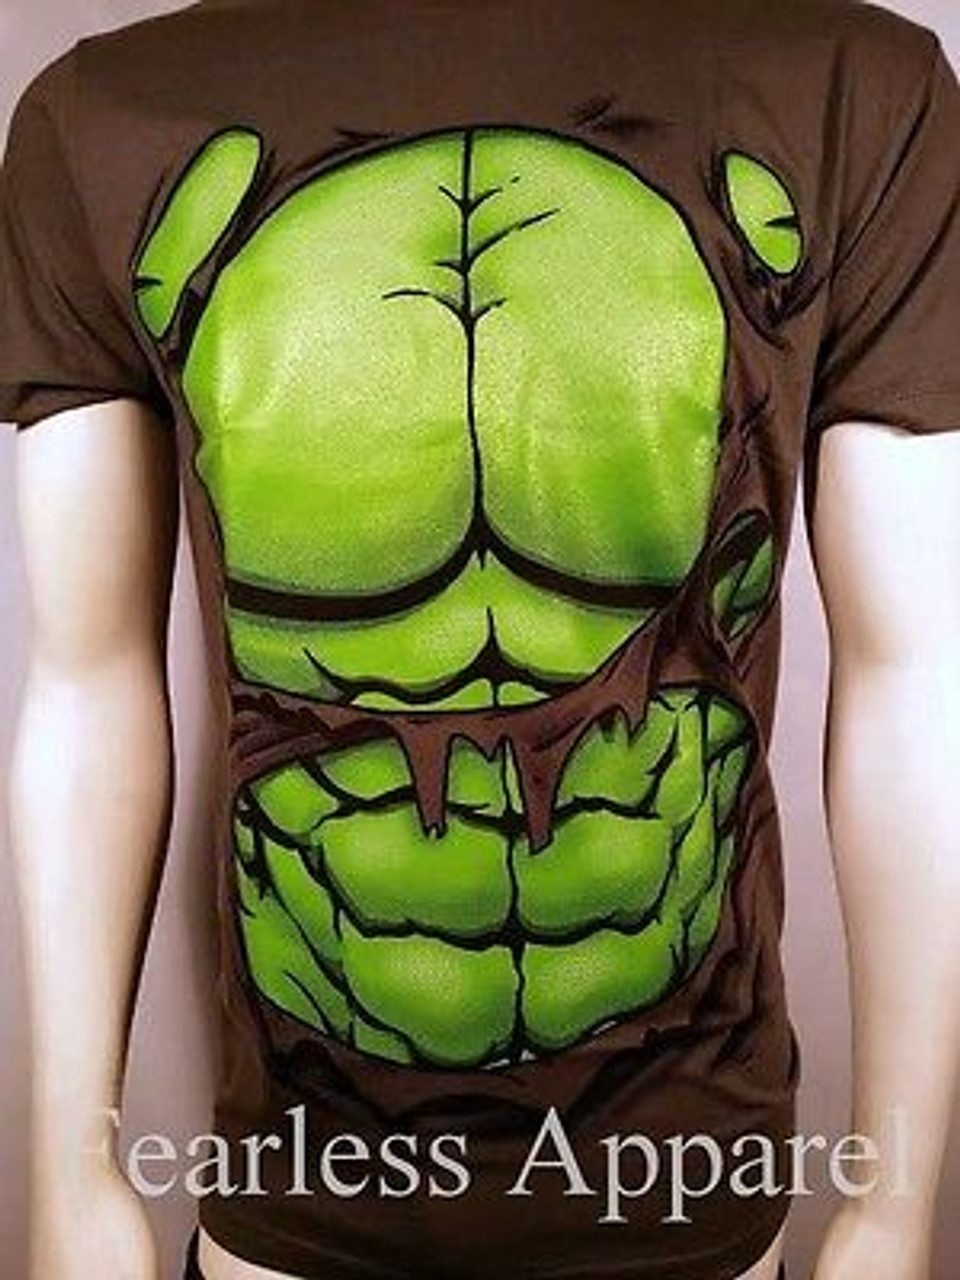 Hulk muscle shirt 